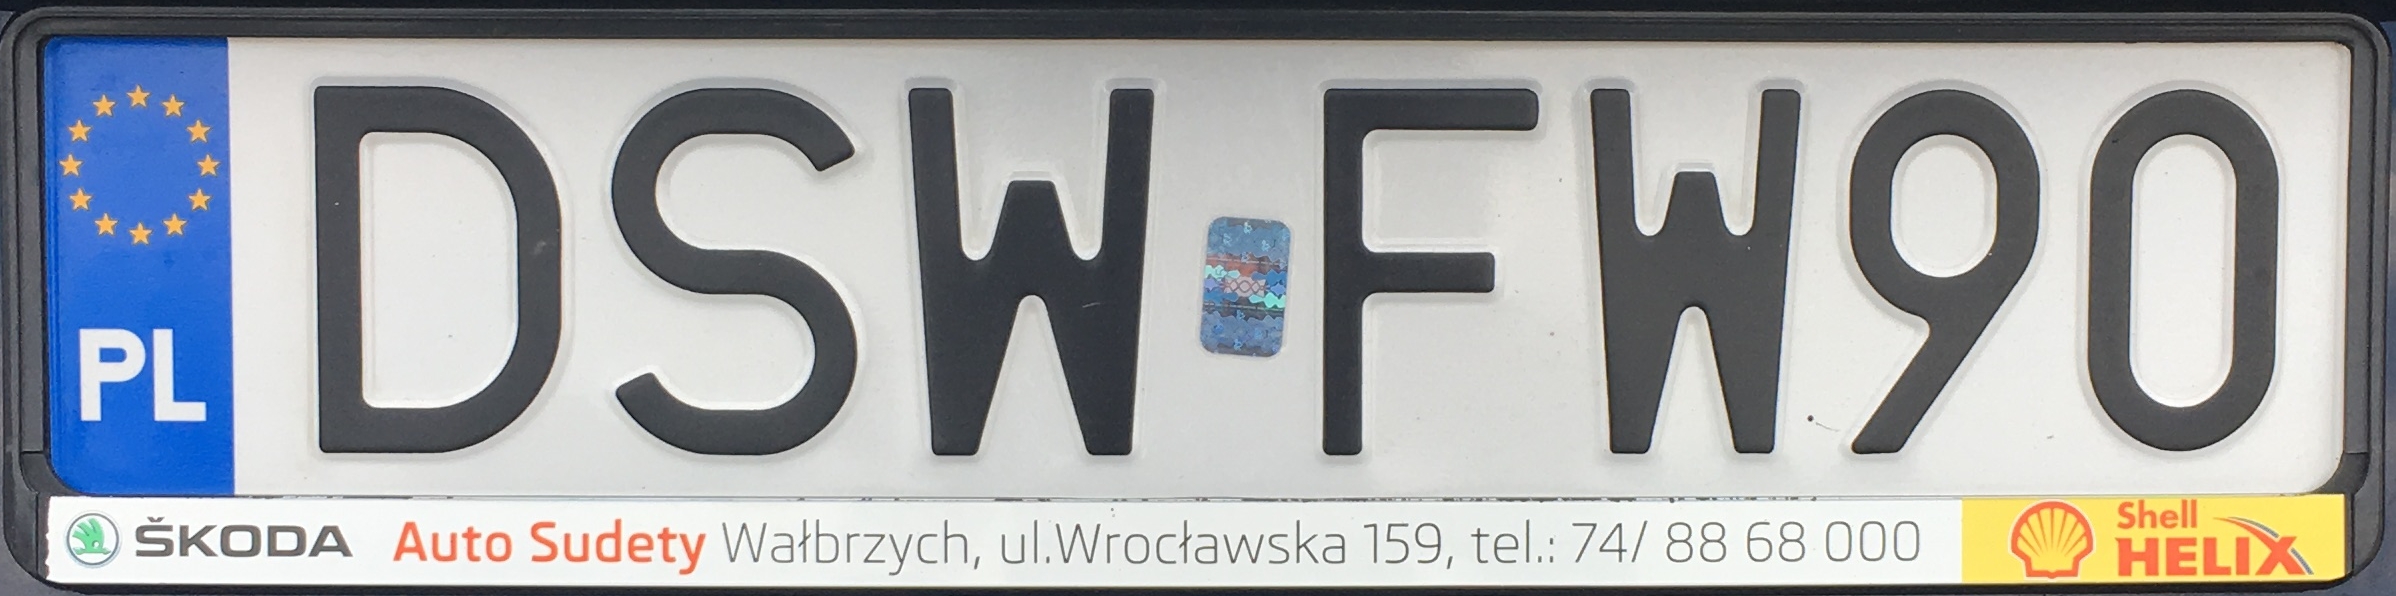 Registrační značka Polsko – DSW - Świdnica, foto: www.podalnici.cz